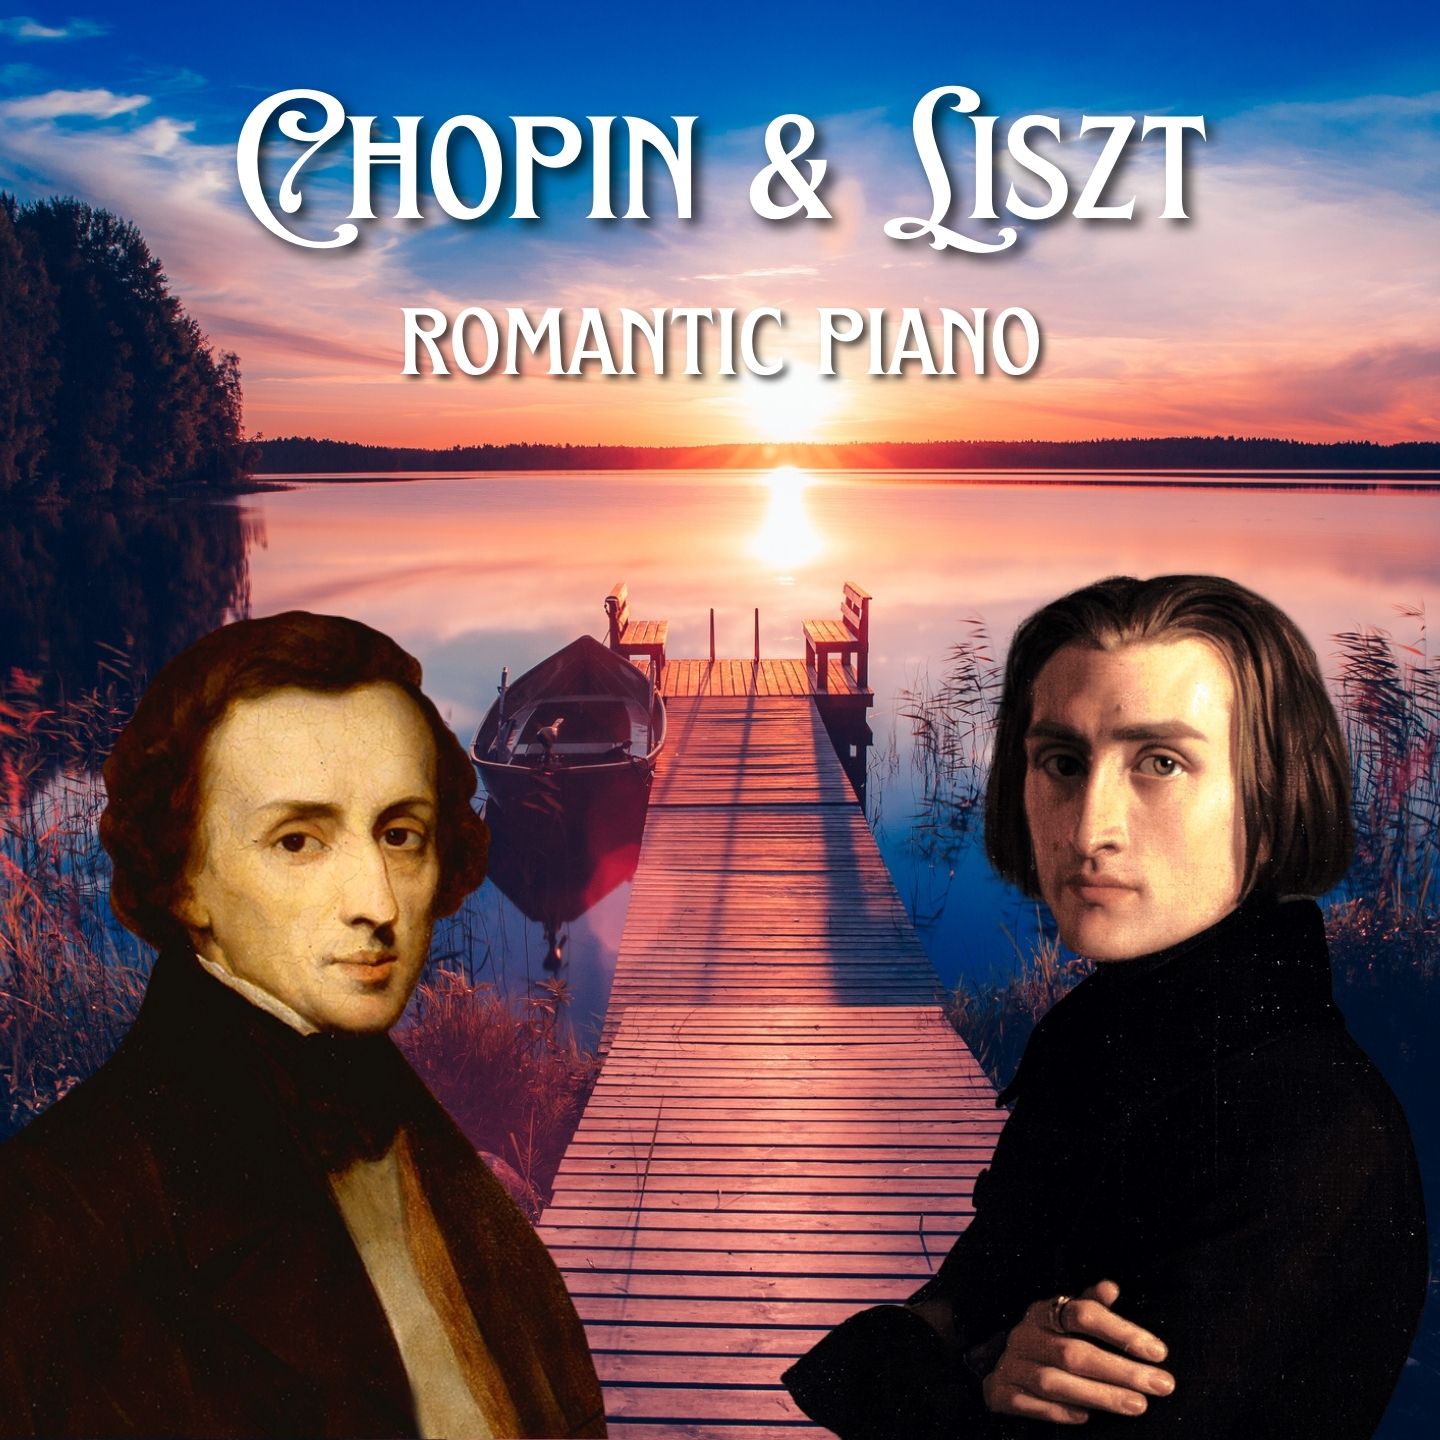 Chopin and Liszt 